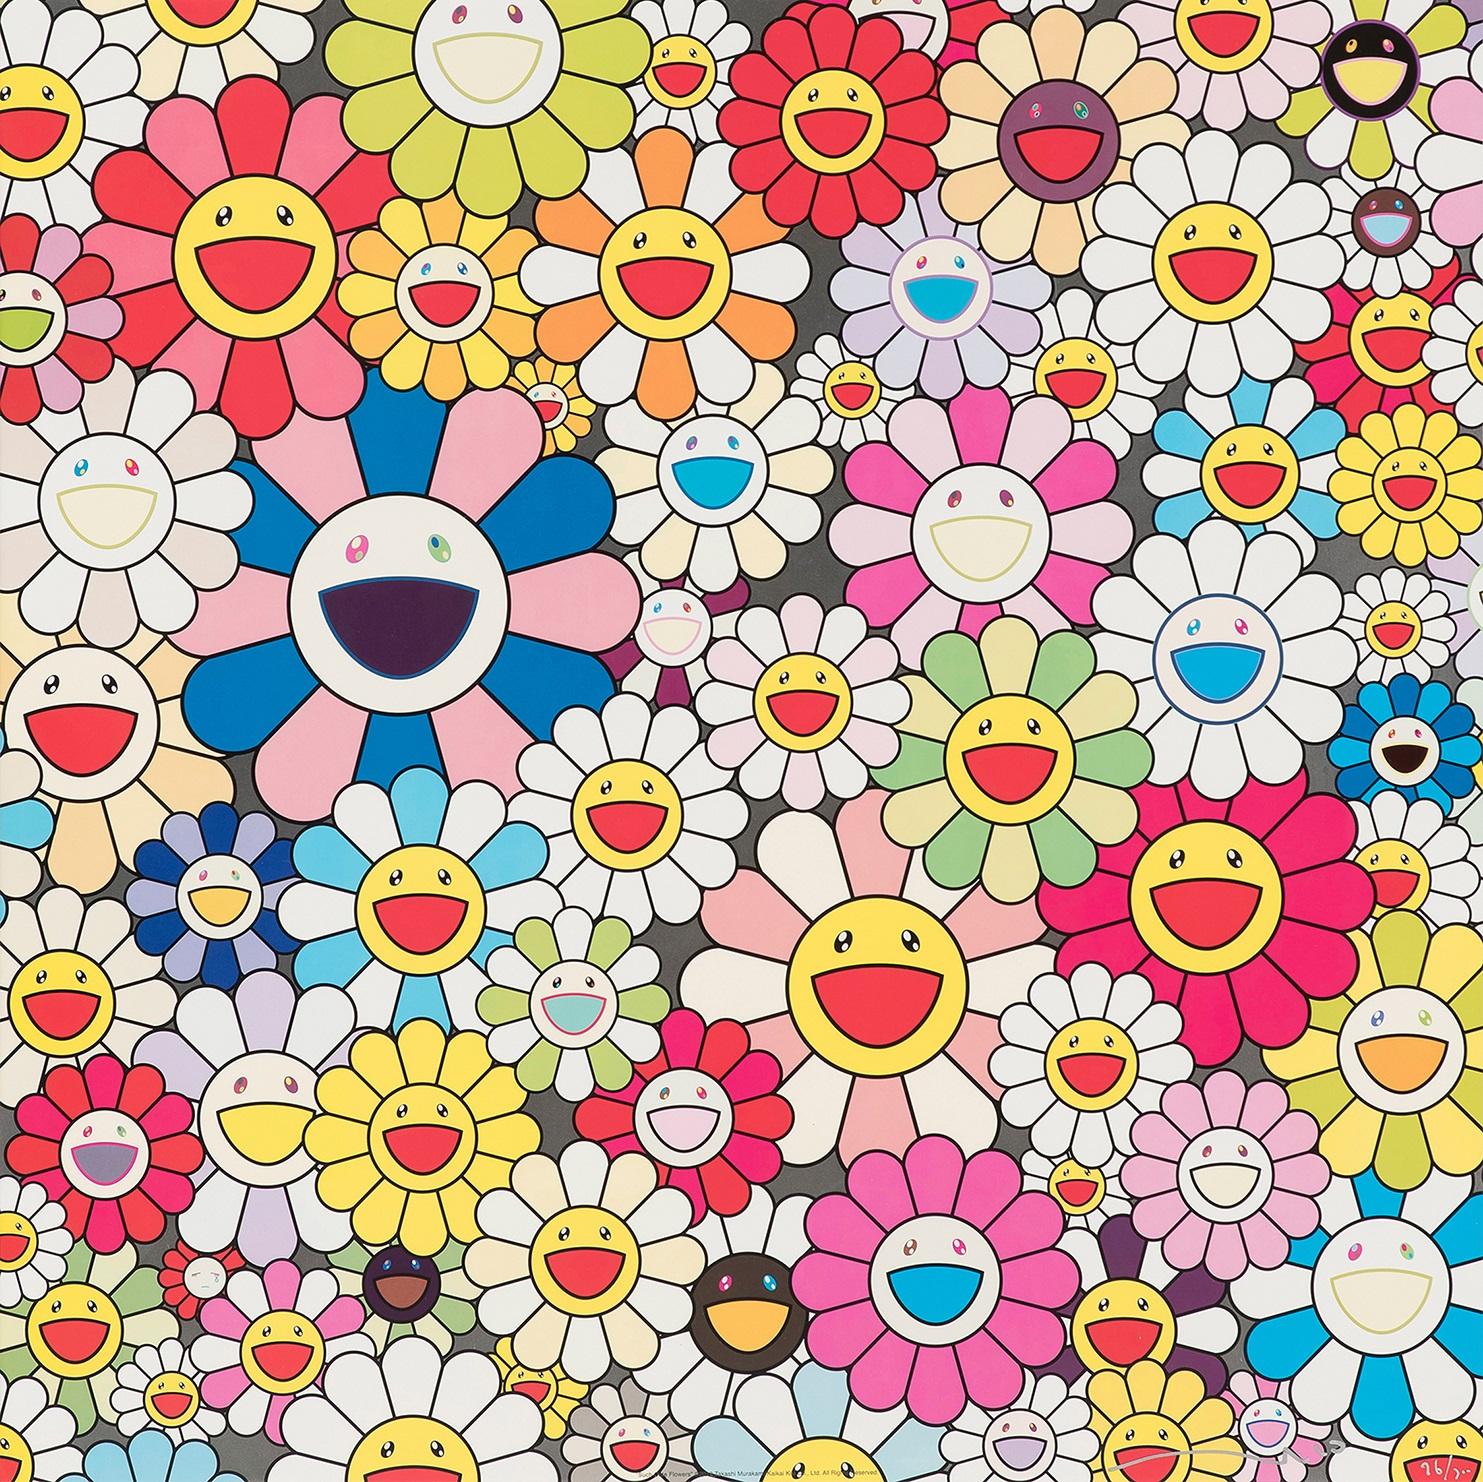 Takashi Murakami Figurative Print – Solch geschliffene Blumen. Limitierte Auflage (Druck) von Murakami, signiert